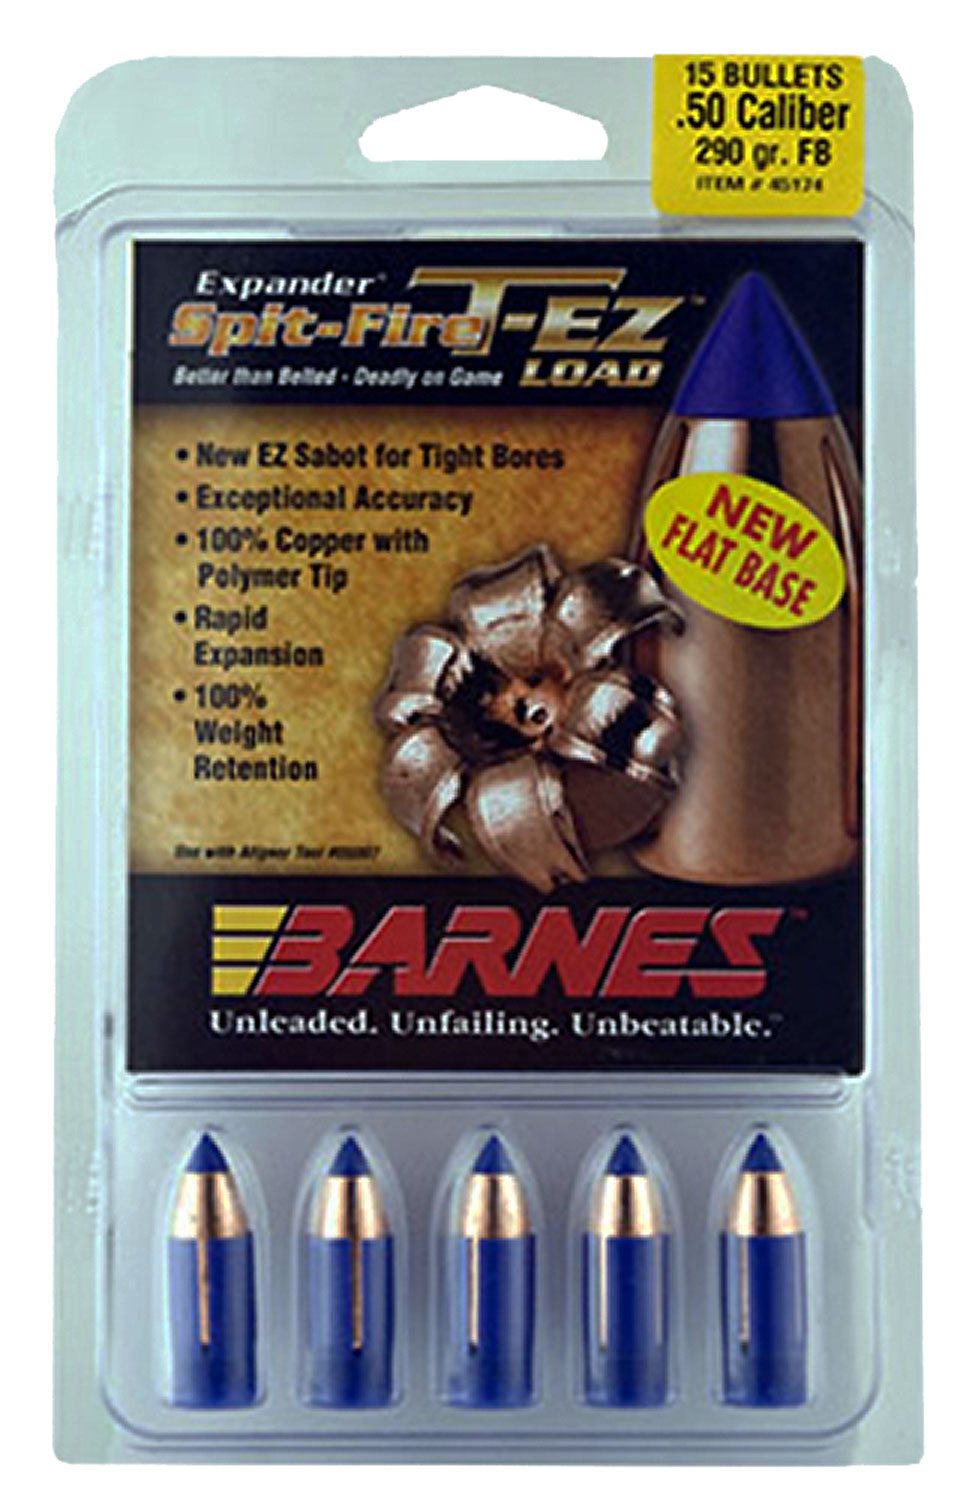 Barnes Bullets 30587 Spit-Fire T-EZ  50 Cal 250 GR 15